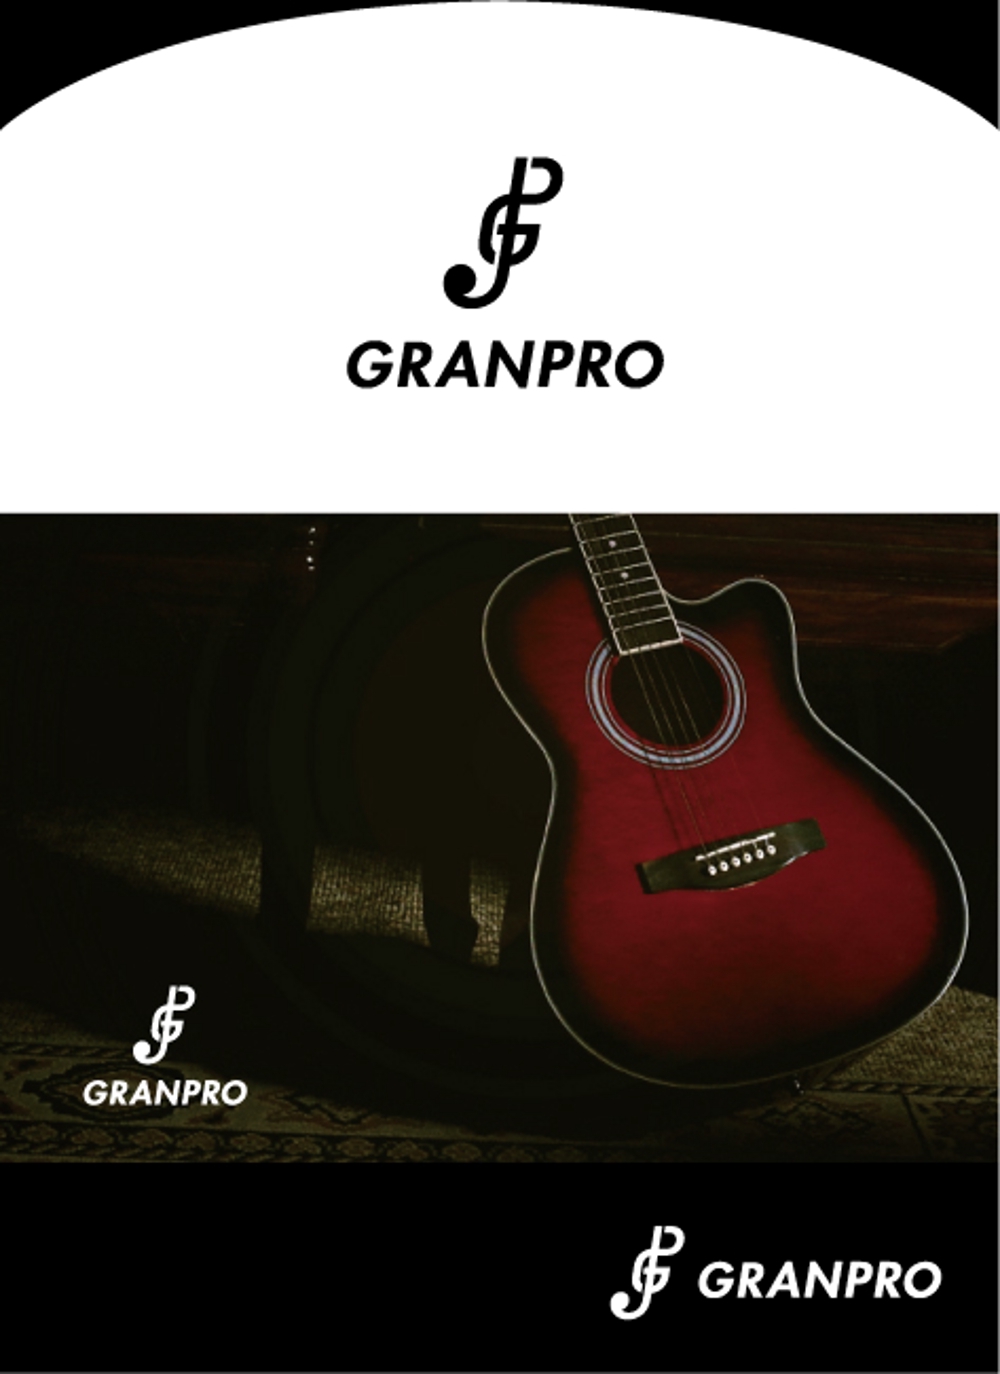 GRANPRO_アートボード 1.jpg